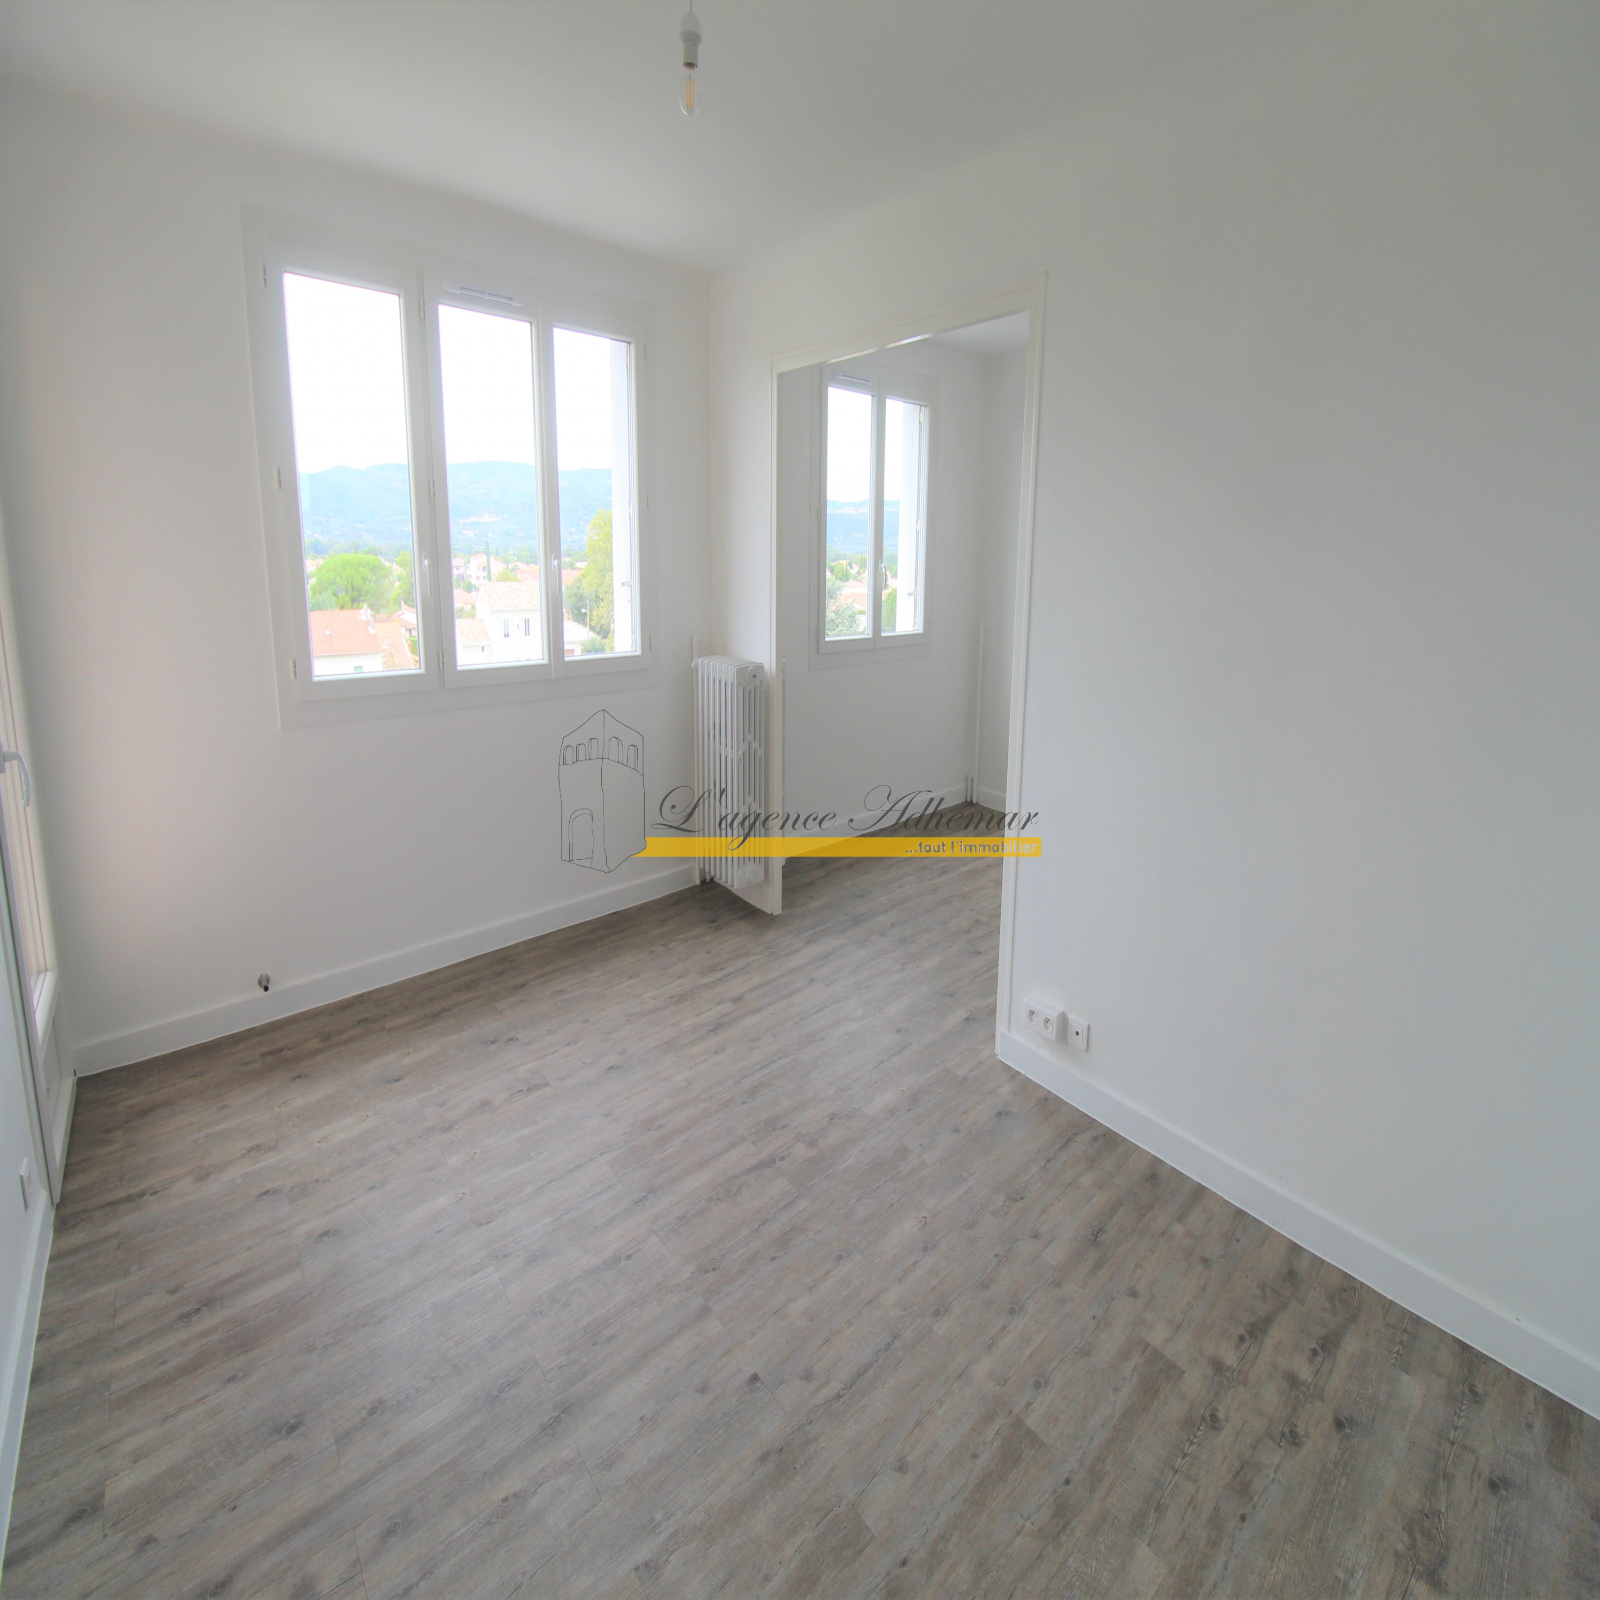 Image_6, Appartement, Montélimar, ref :342G